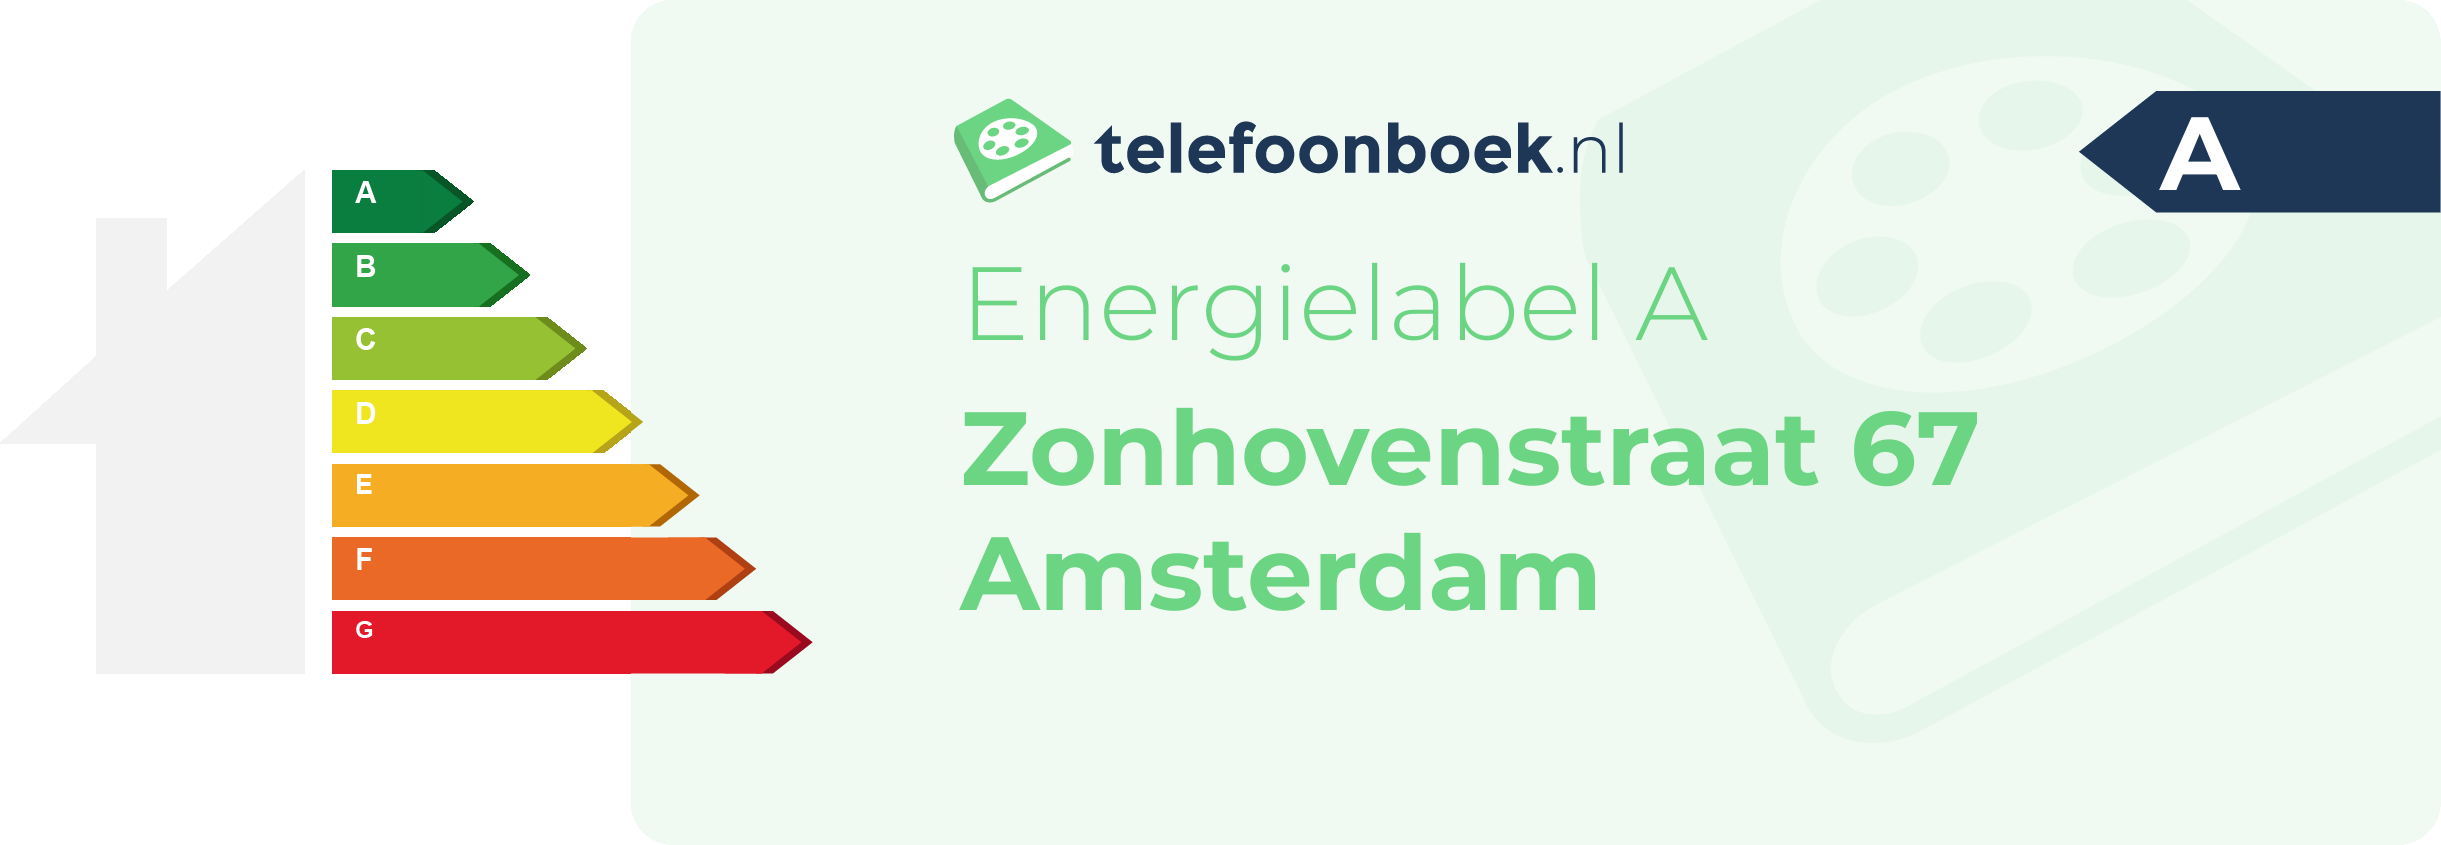 Energielabel Zonhovenstraat 67 Amsterdam